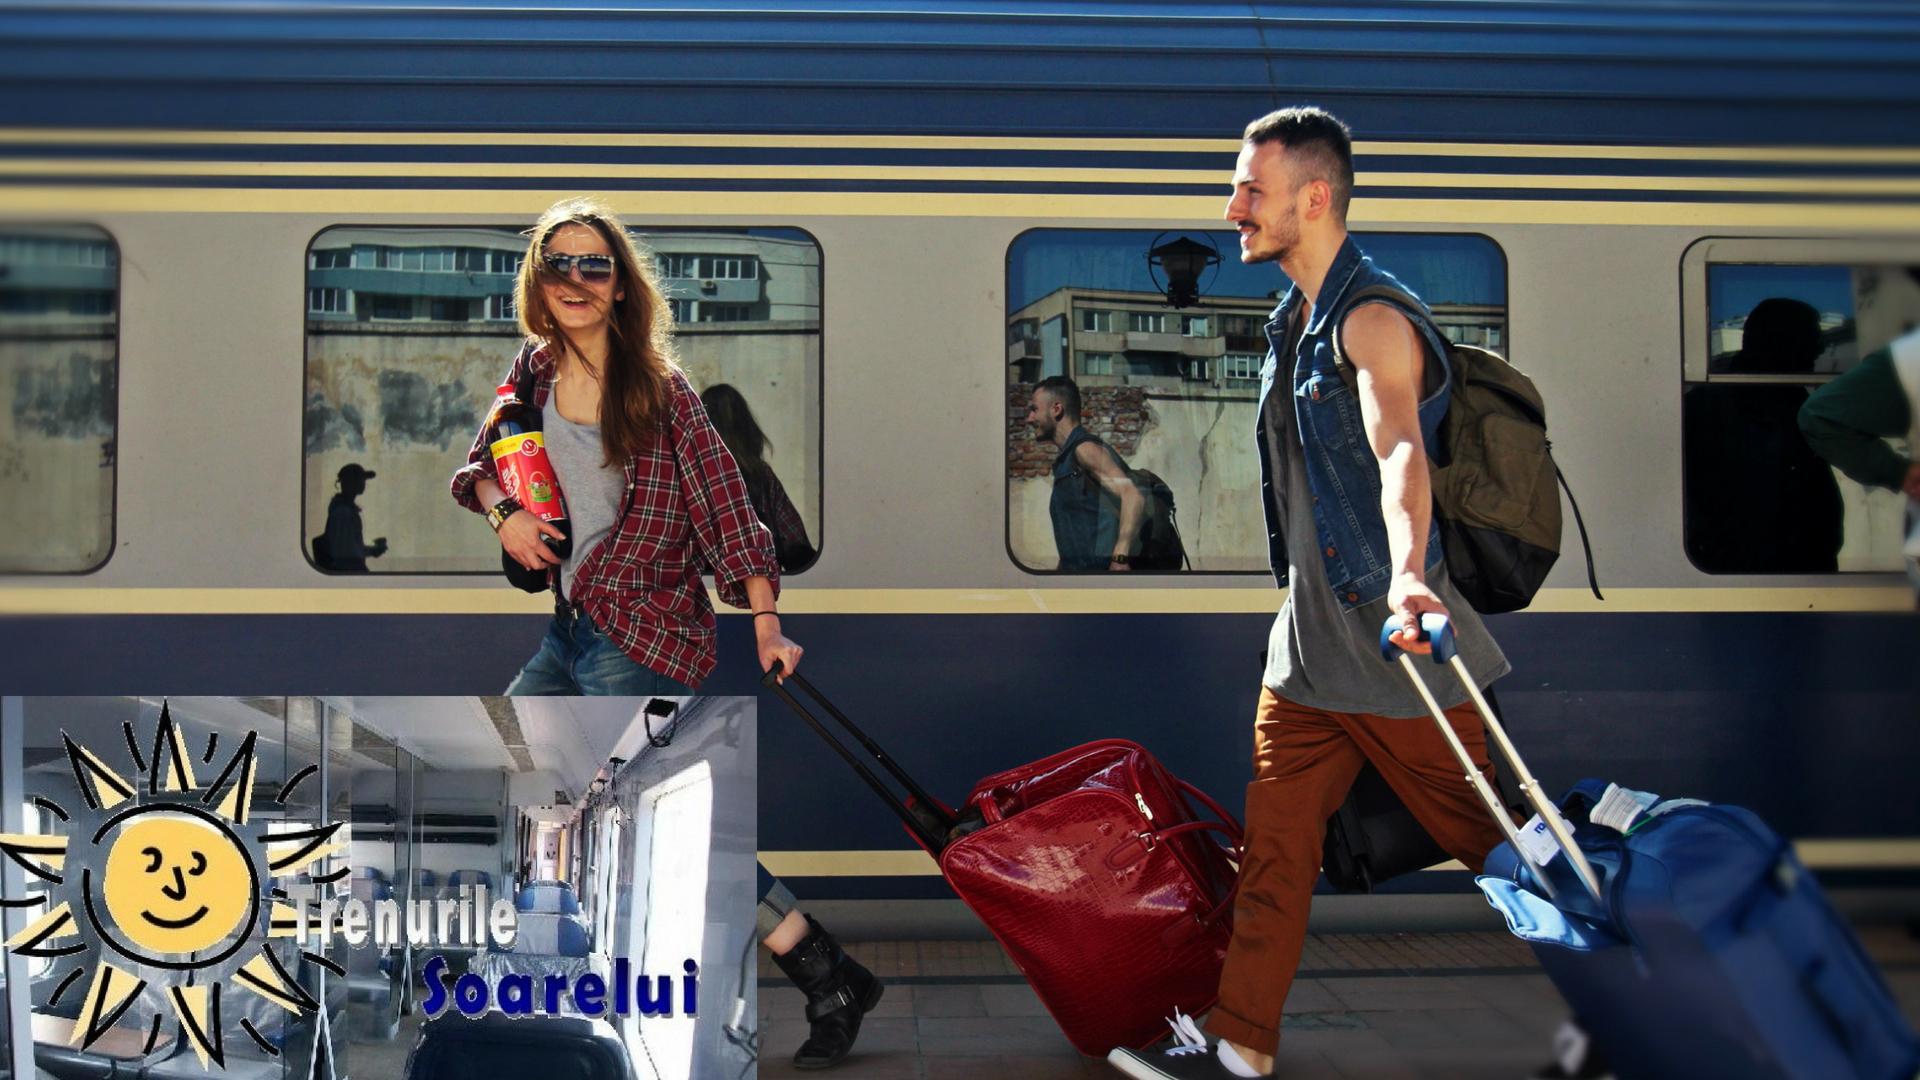 Program mersul trenurilor pe ruta București - Constanța! S-au repornit „Trenurile Soarelui”!